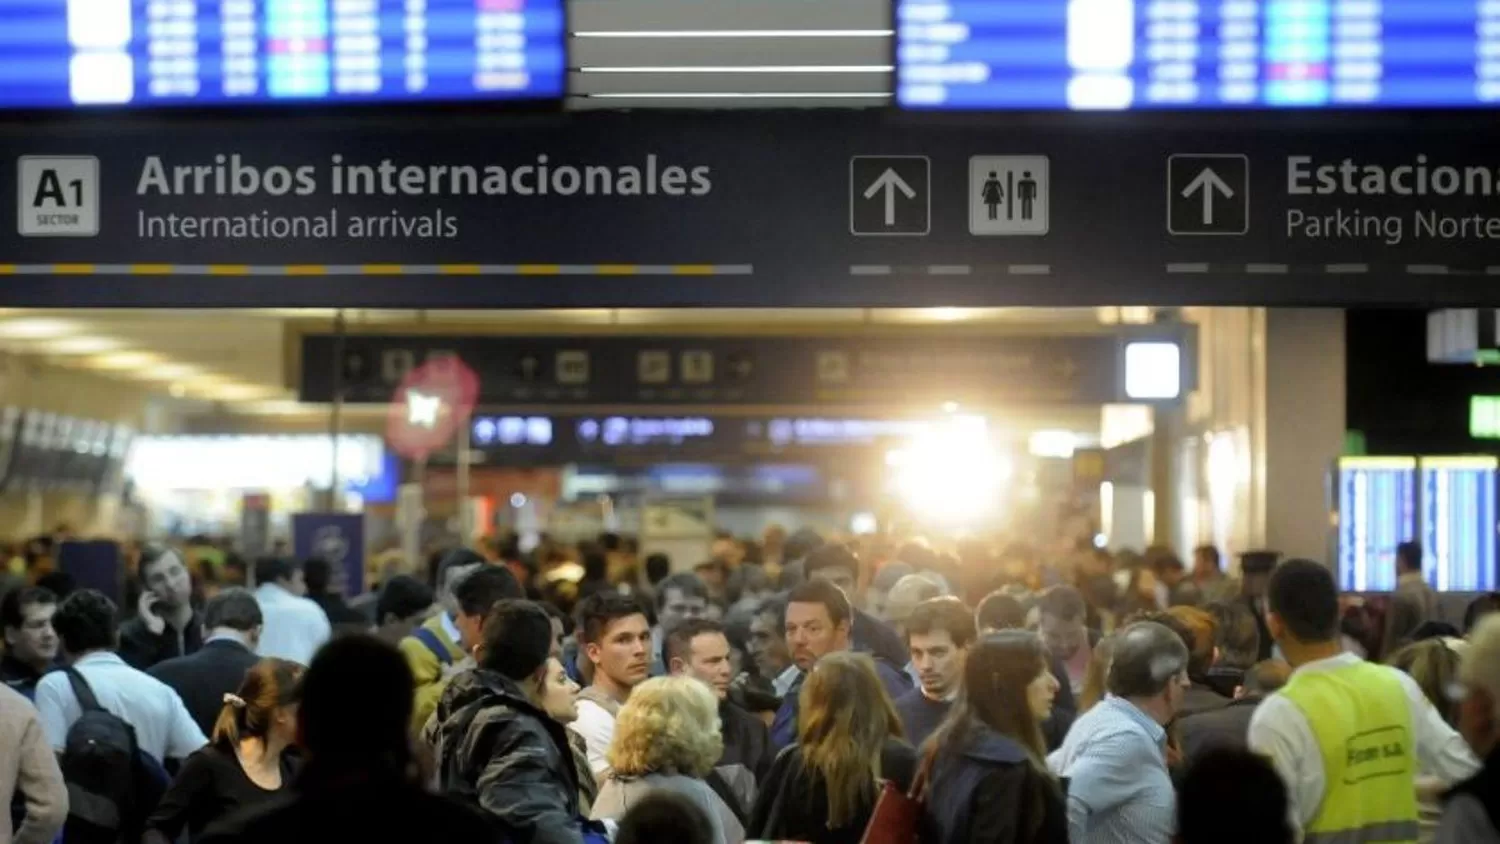 CANCELACIÓN DE VUELOS. Miles de pasajeros afectados por el paro #25S